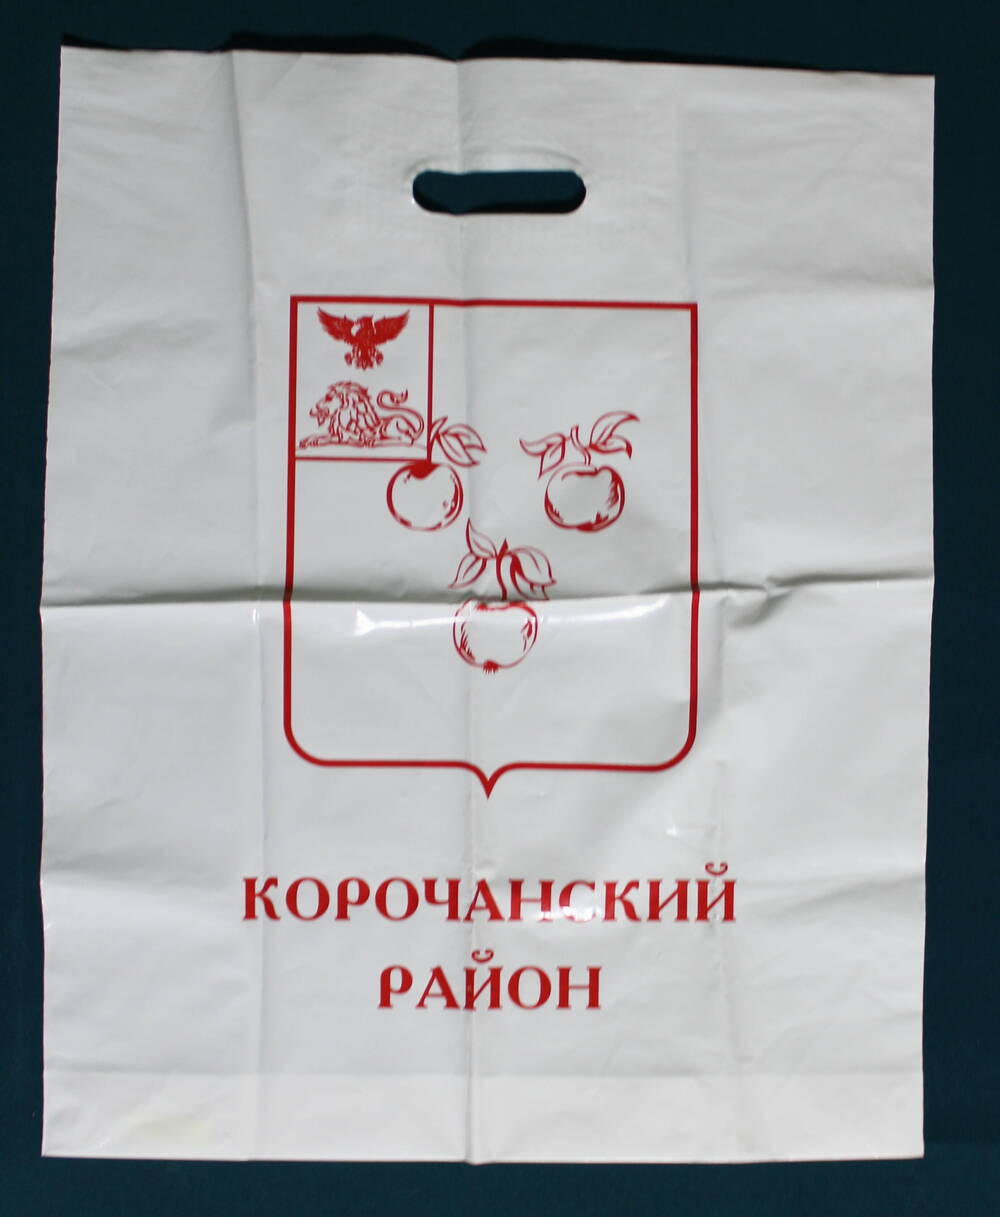 Пакет хозяйственный с гербом Корочанского района